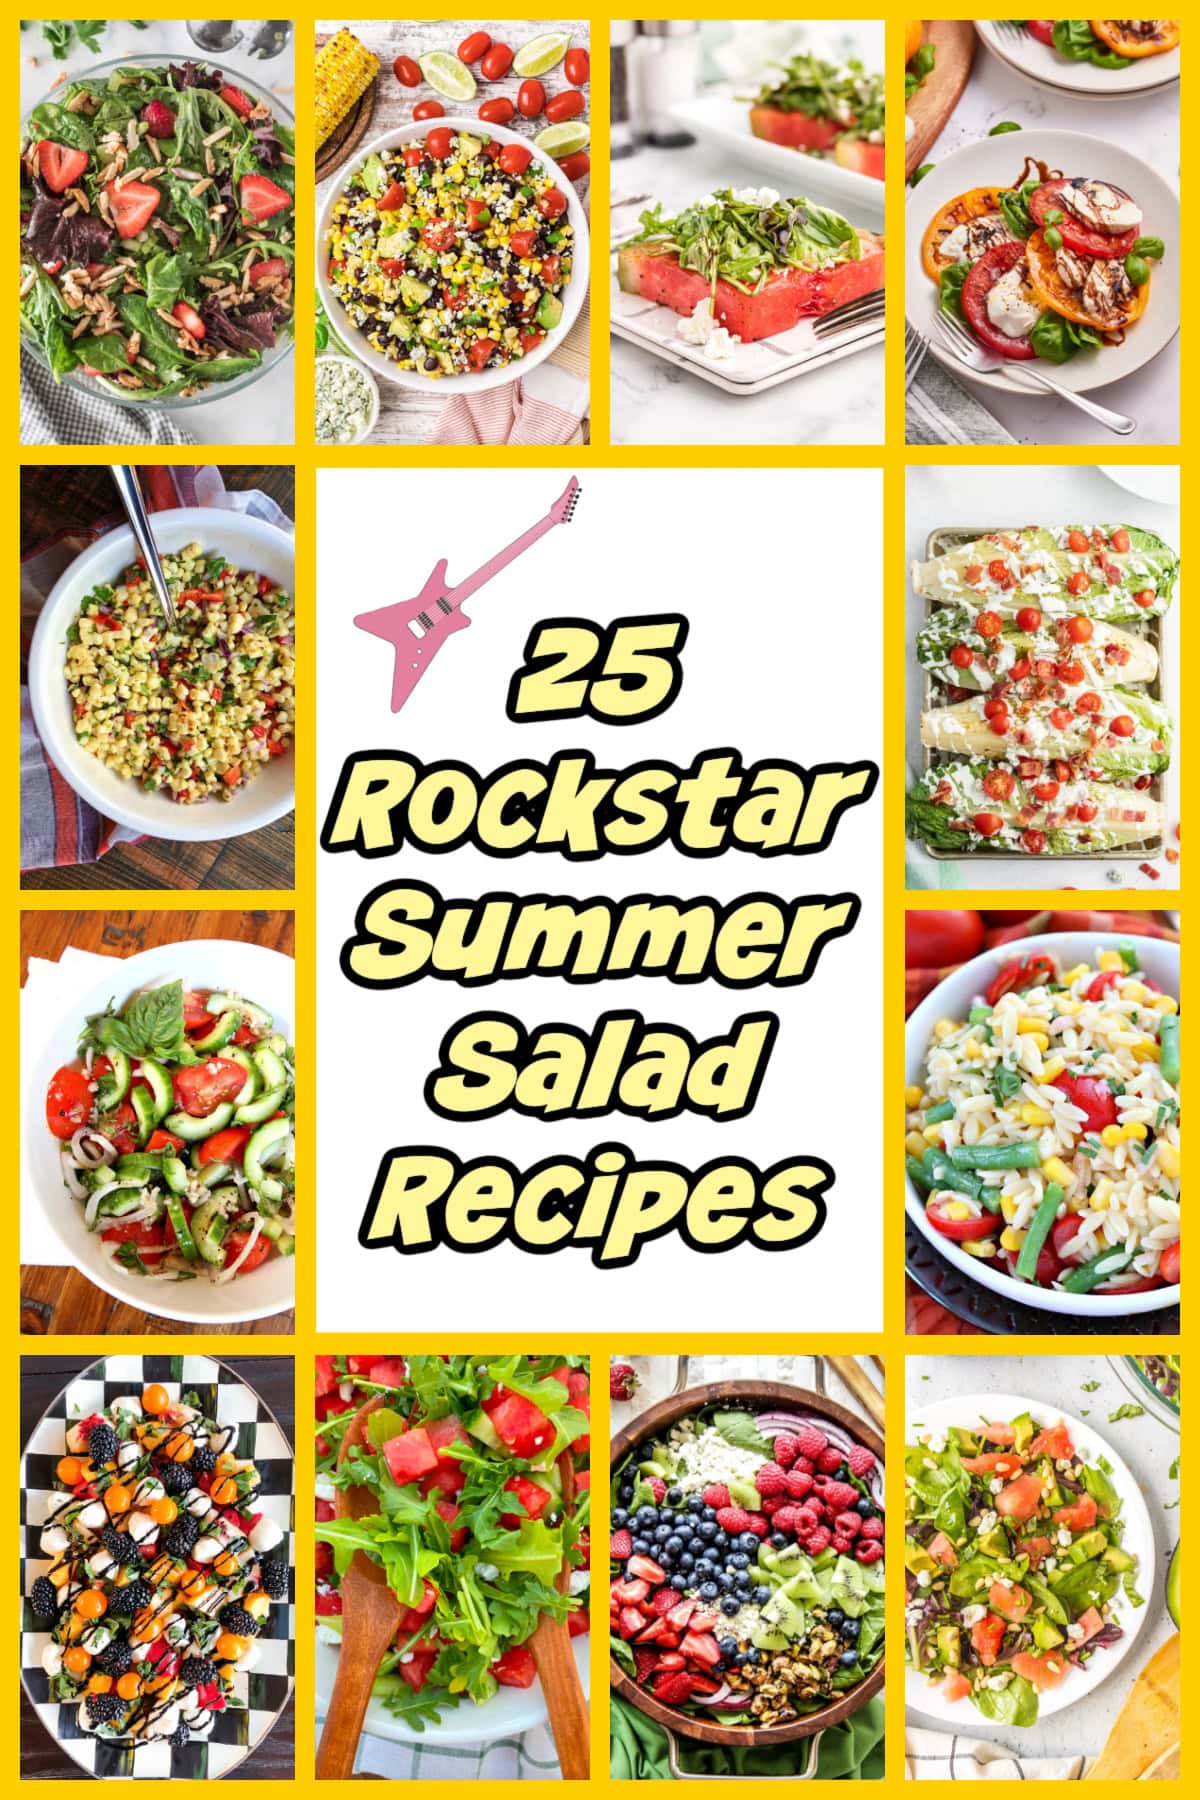 25 Rockstar Summer Salad Recipes